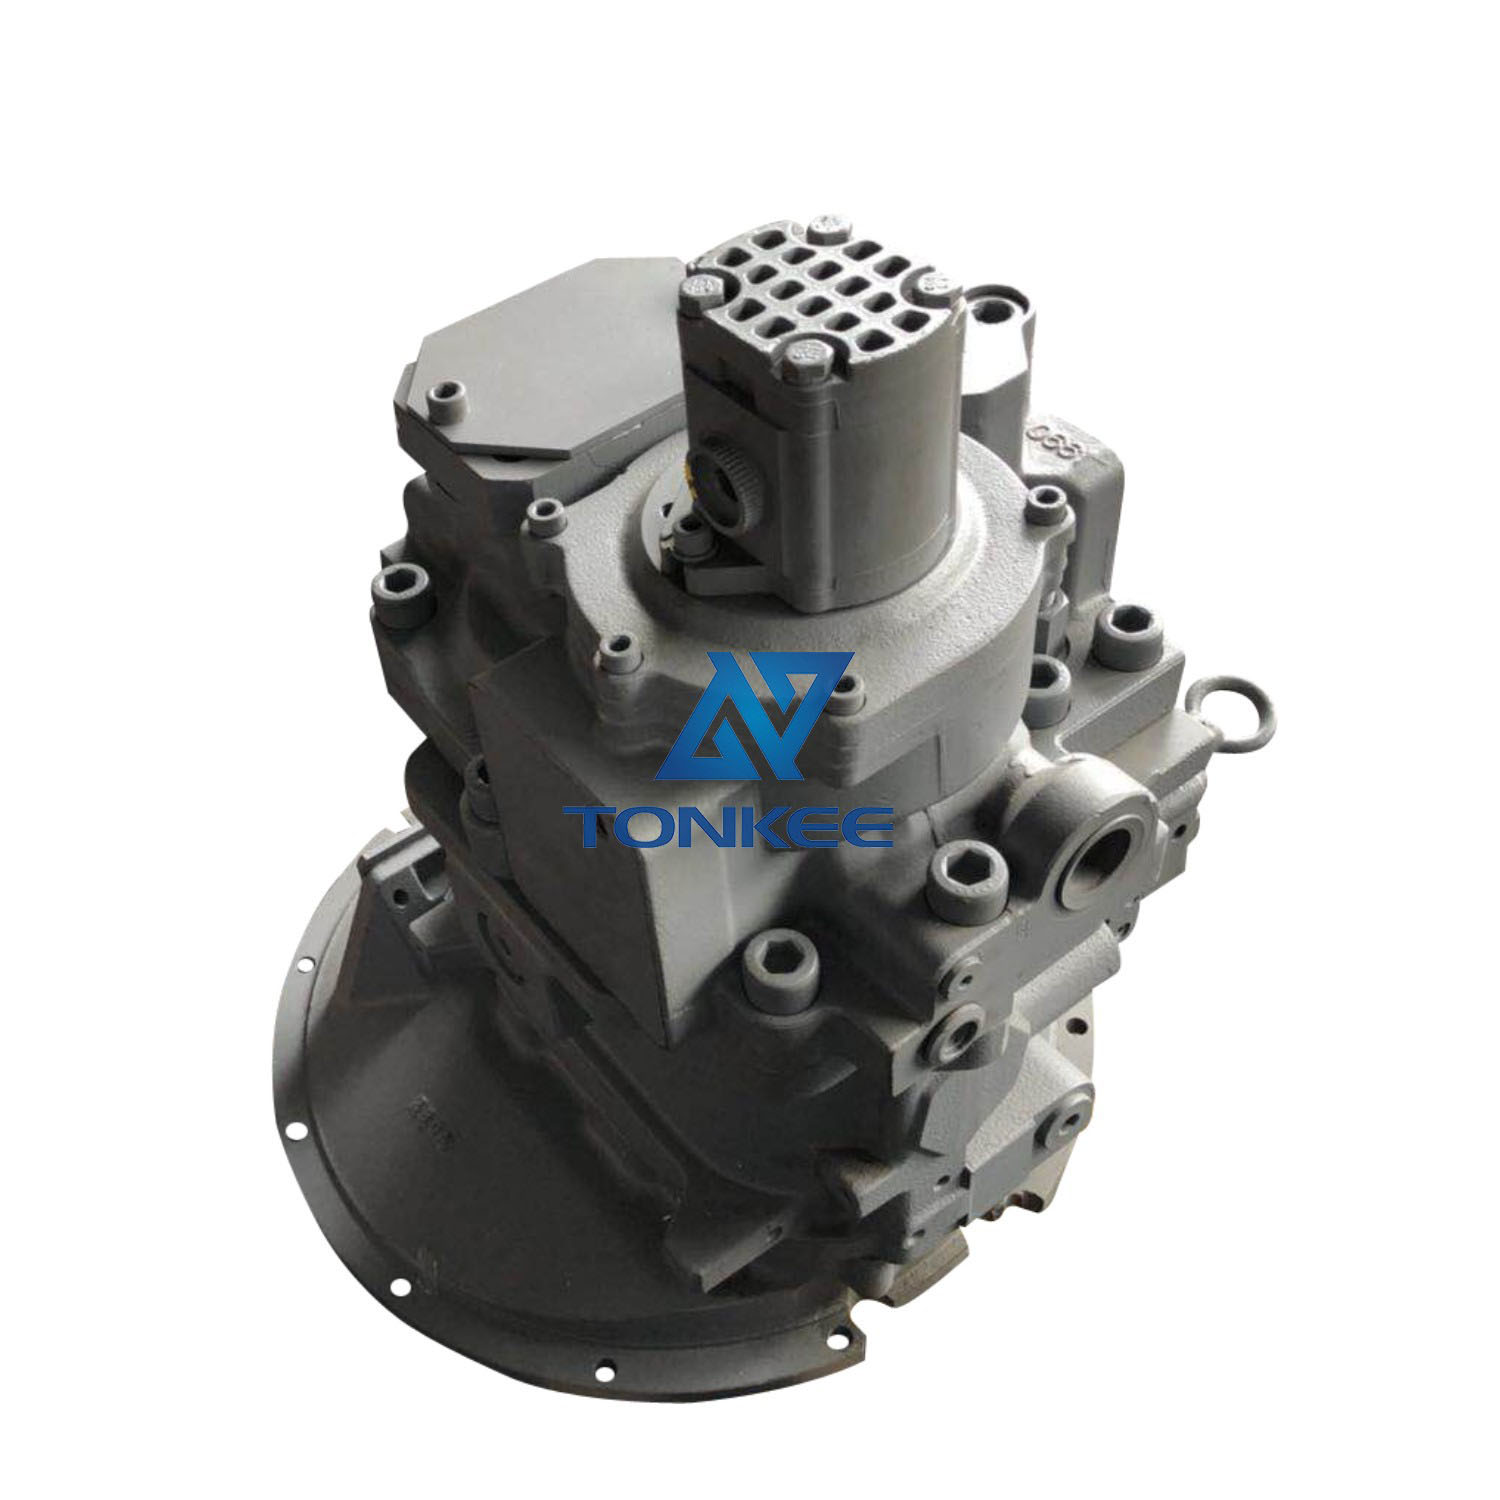 KYM 4633472 YA00035148 K5V200DPH11ER-OE11 hydraulic main pump 